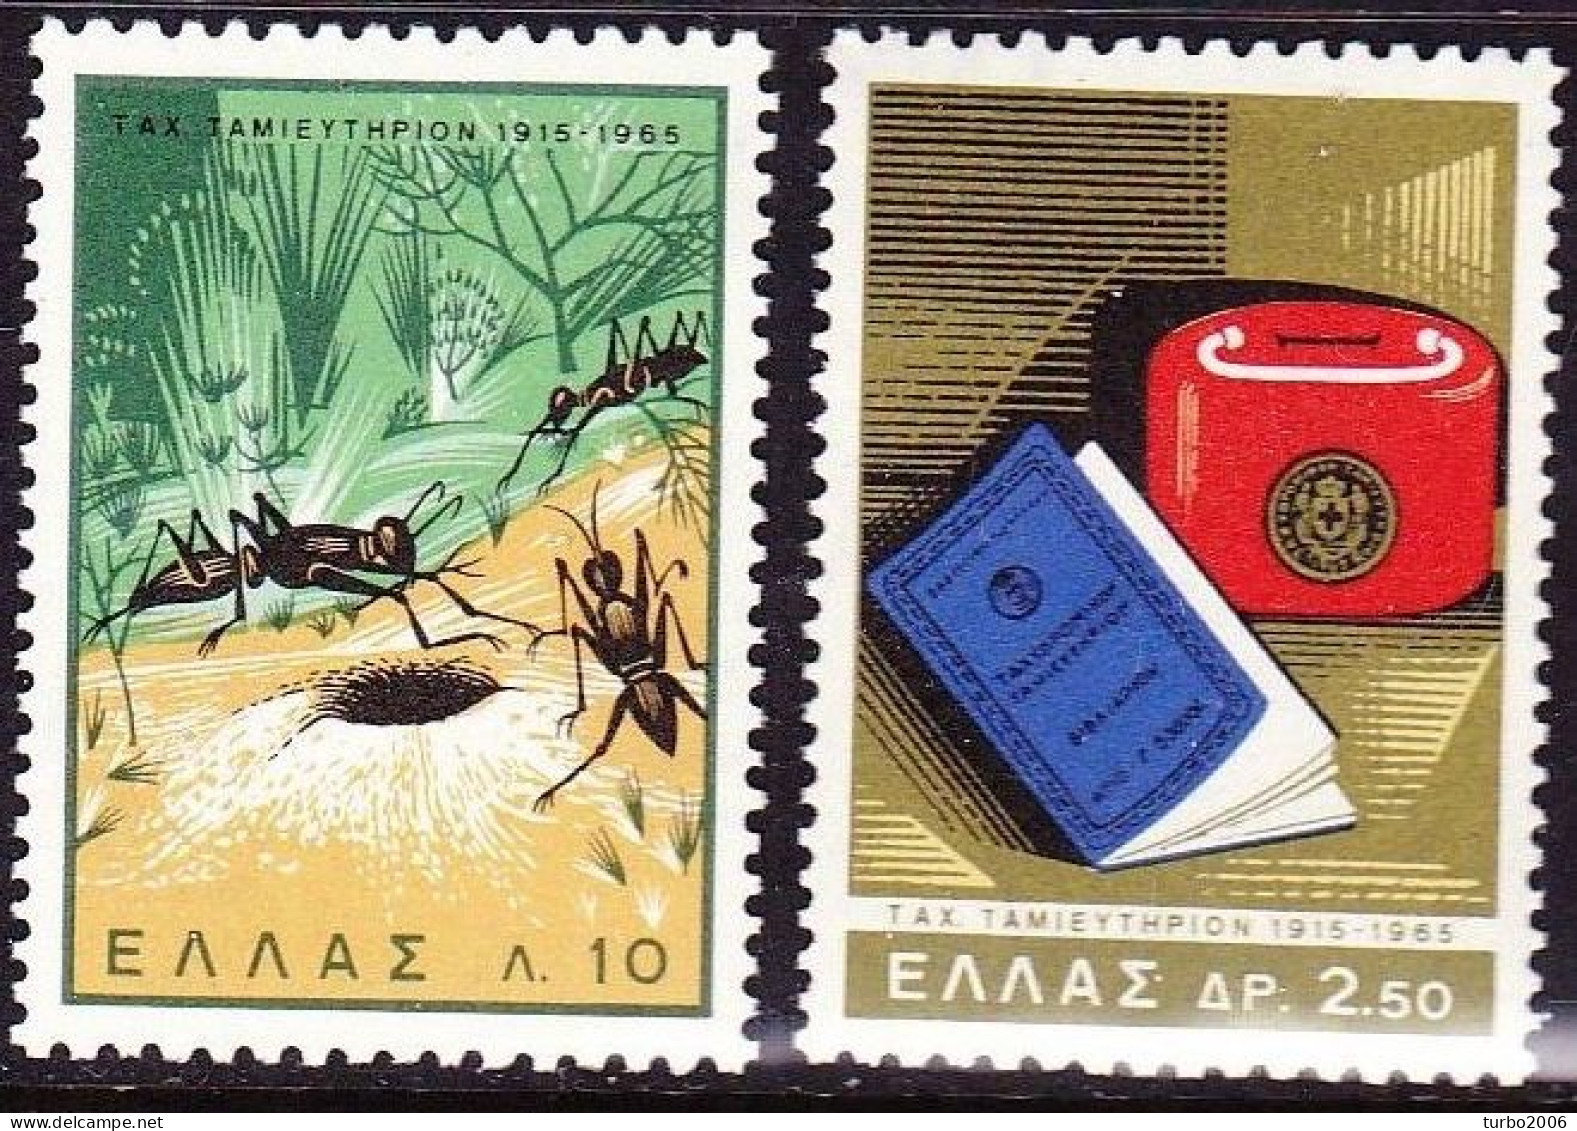 GREECE 1965 Postal Bank Vl. 958 / 959 MNH - Nuevos